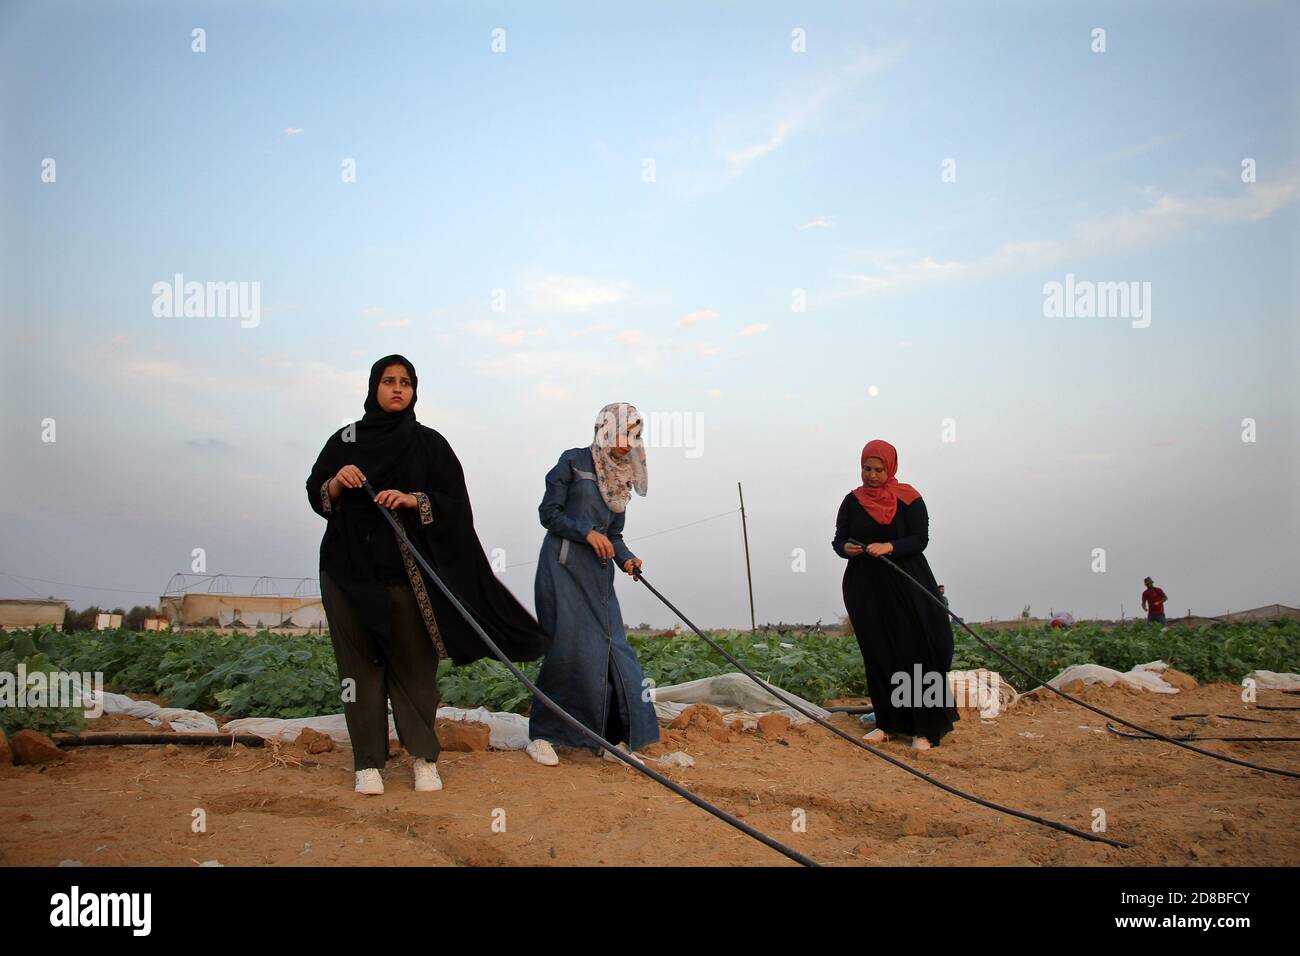 Gaza. Oktober 2020. Palästinensische Frauen arbeiten am 28. Oktober 2020 auf einem Bauernhof nahe der Grenze zwischen dem Gazastreifen und Israel, östlich der Stadt Khan Younis im südlichen Gazastreifen. Israel verhängte an der Ostgrenze des Gazastreifens eine Pufferzone von 300 Metern und behauptete, dass die Pufferzone palästinensische bewaffnete Gruppierungen daran hindern könnte, Angriffe auf israelisches Gebiet zu starten. Dieser Schritt forderte jedoch einen Tribut für den Agrarsektor in Gaza, da viele fruchtbare Länder entlang der Grenze für die Bewohner des Gazastreifens zu gefährlich geworden sind, um sich ihnen zu nähern. Kredit: Rizek Abdeljawad/Xinhua/Alamy Live Nachrichten Stockfoto